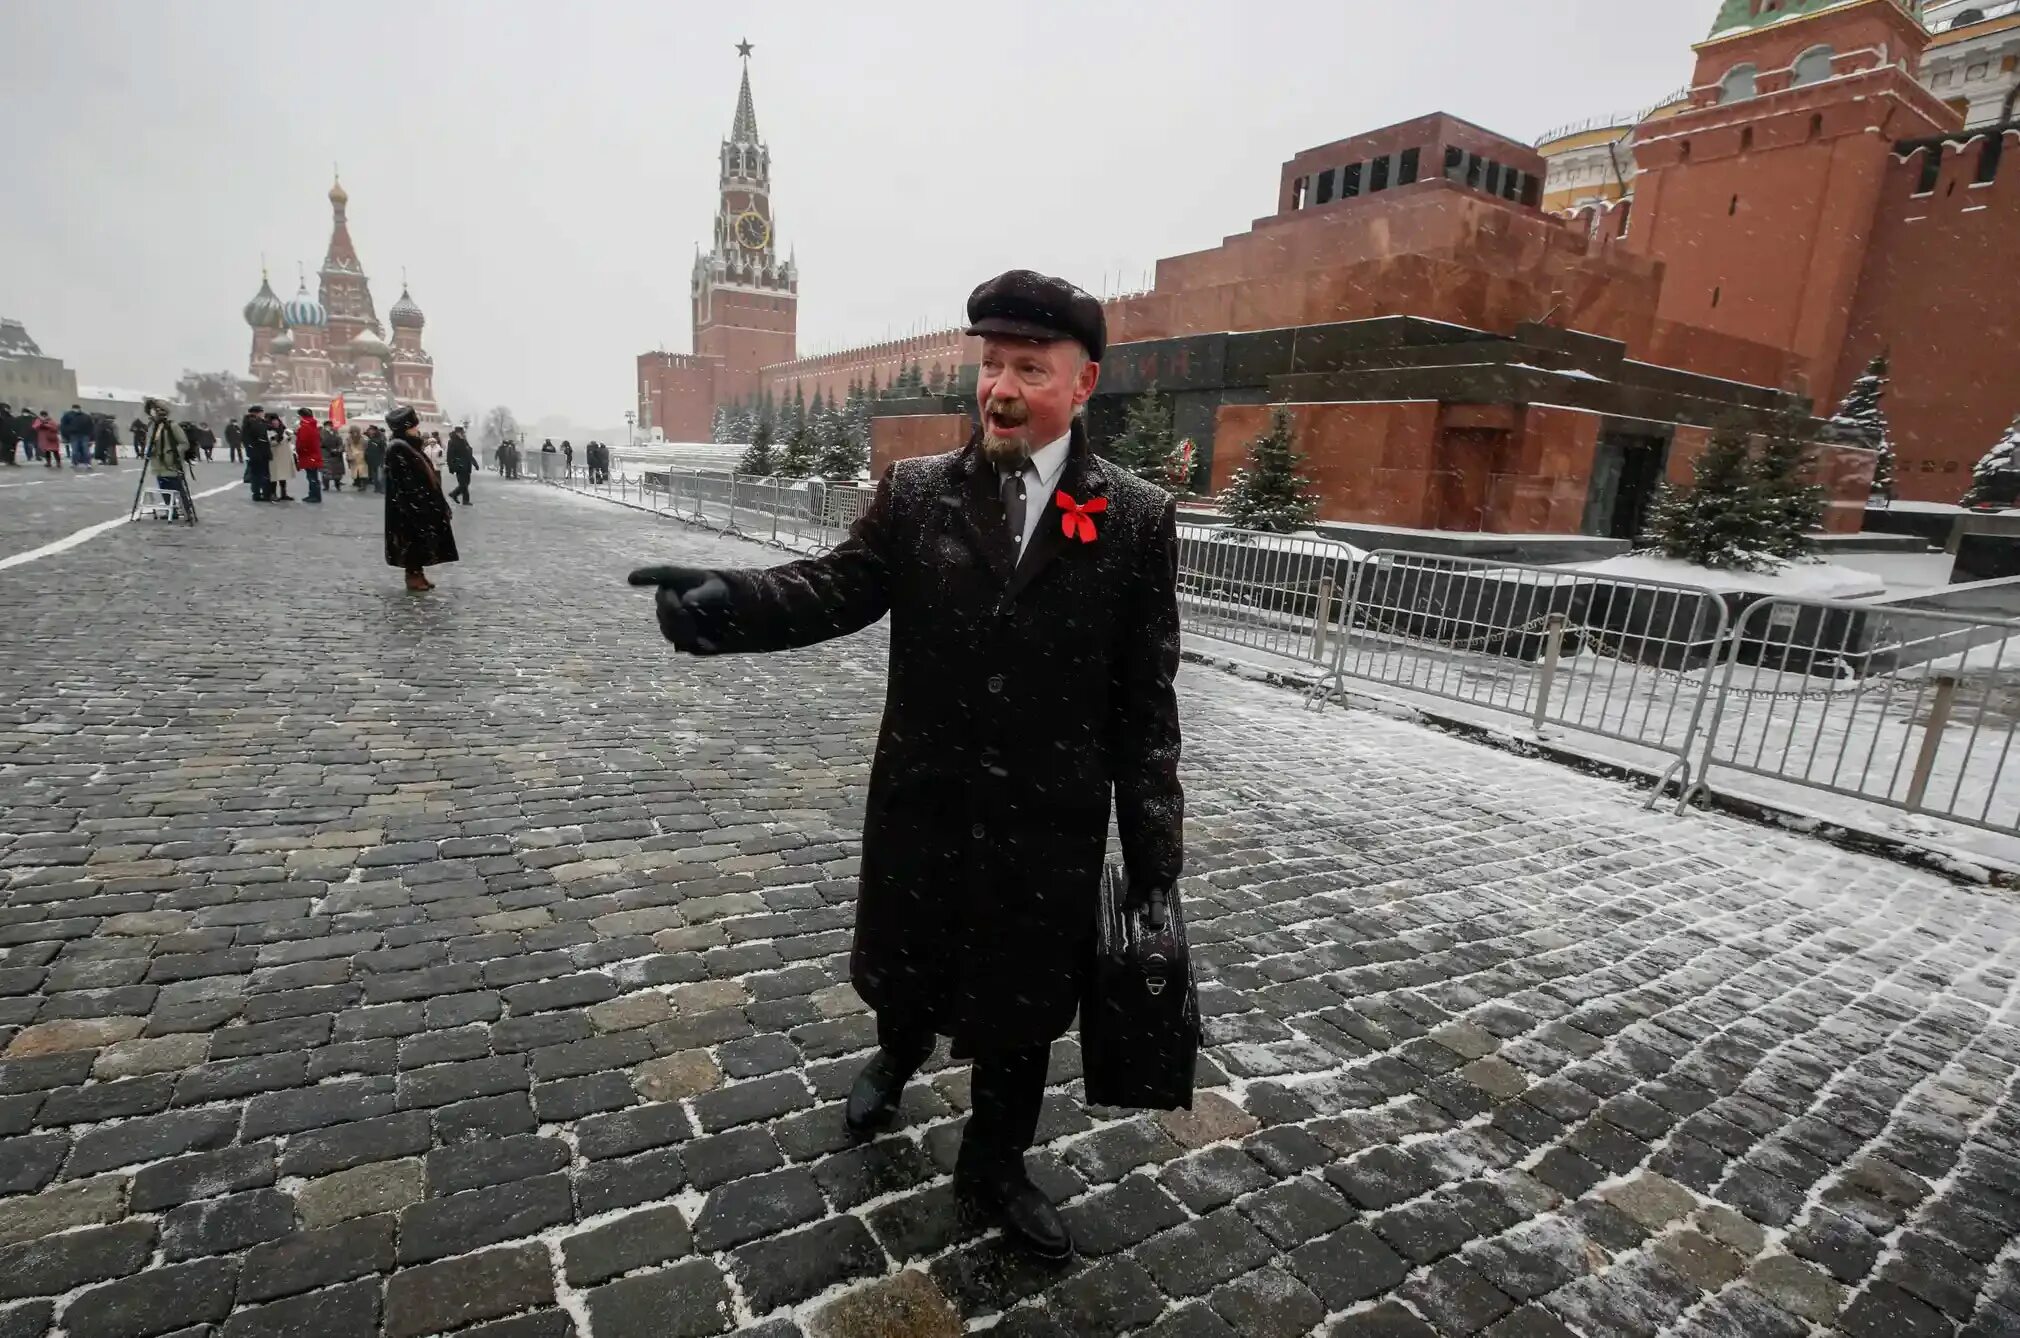 Жить россия будет по новому. Ленин на красной площади в мавзолее. 1) Мавзолей в. и. Ленина на красной площади.